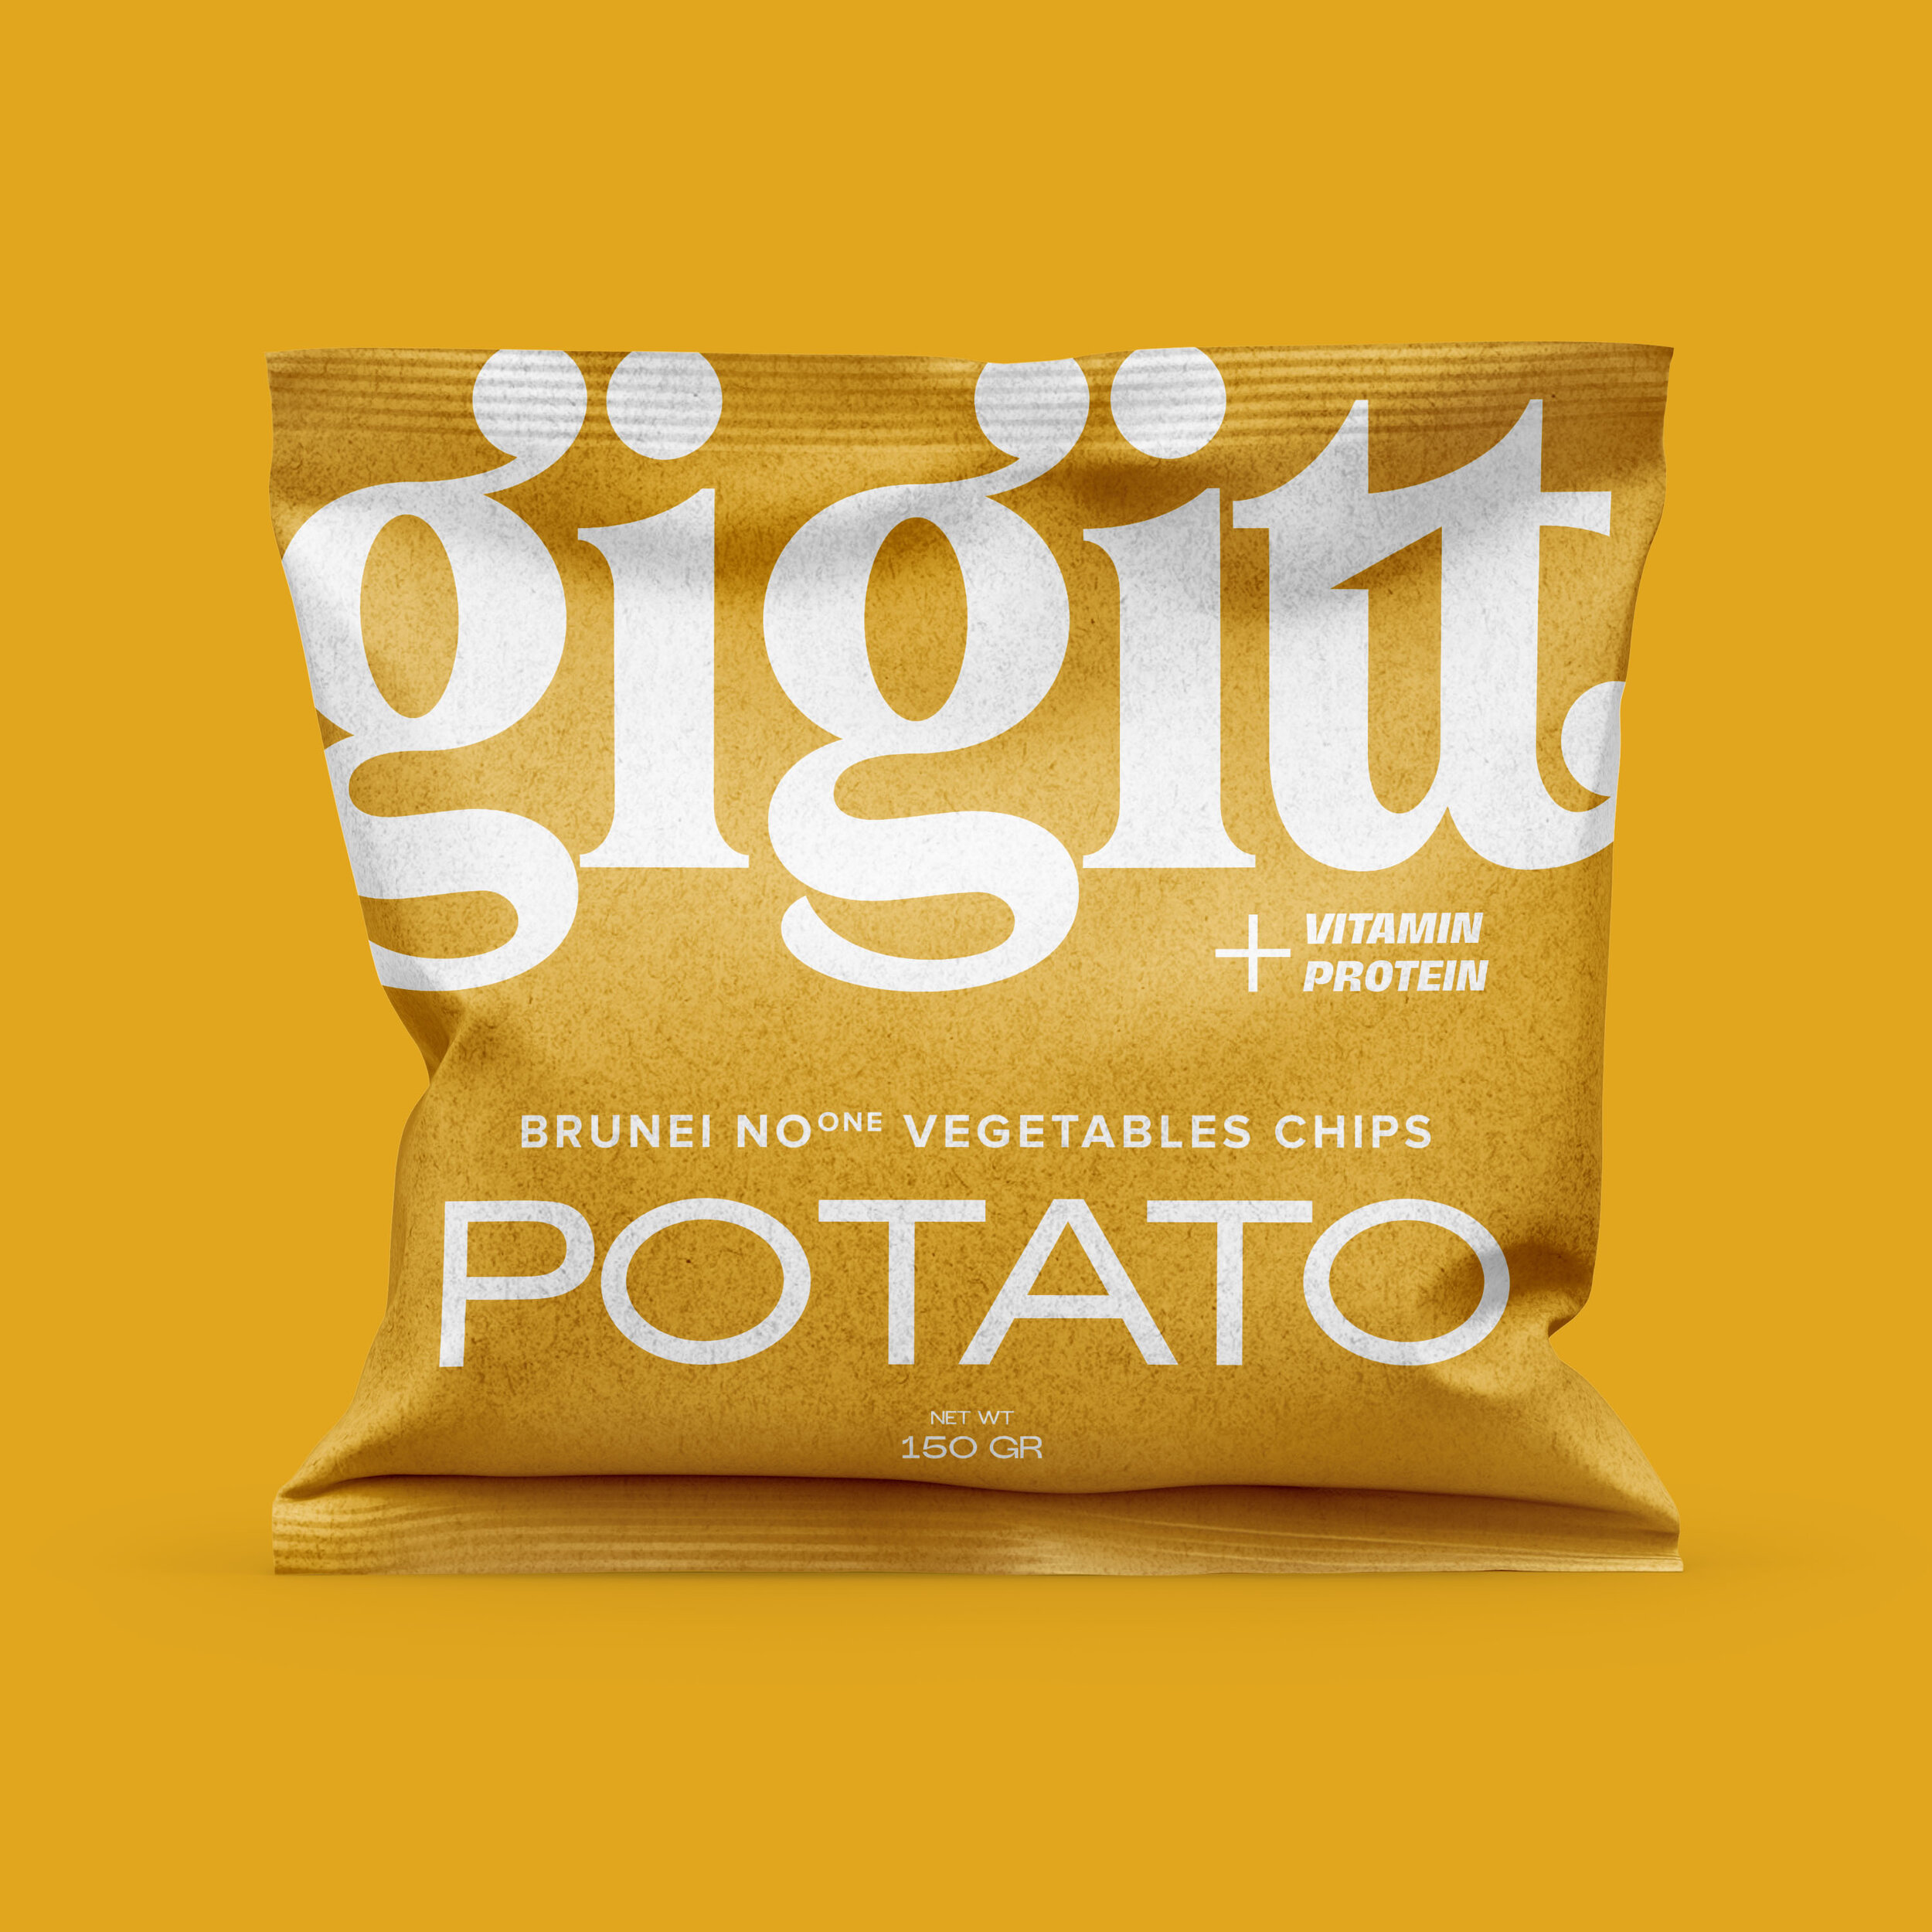 Gigitt Potato.jpg